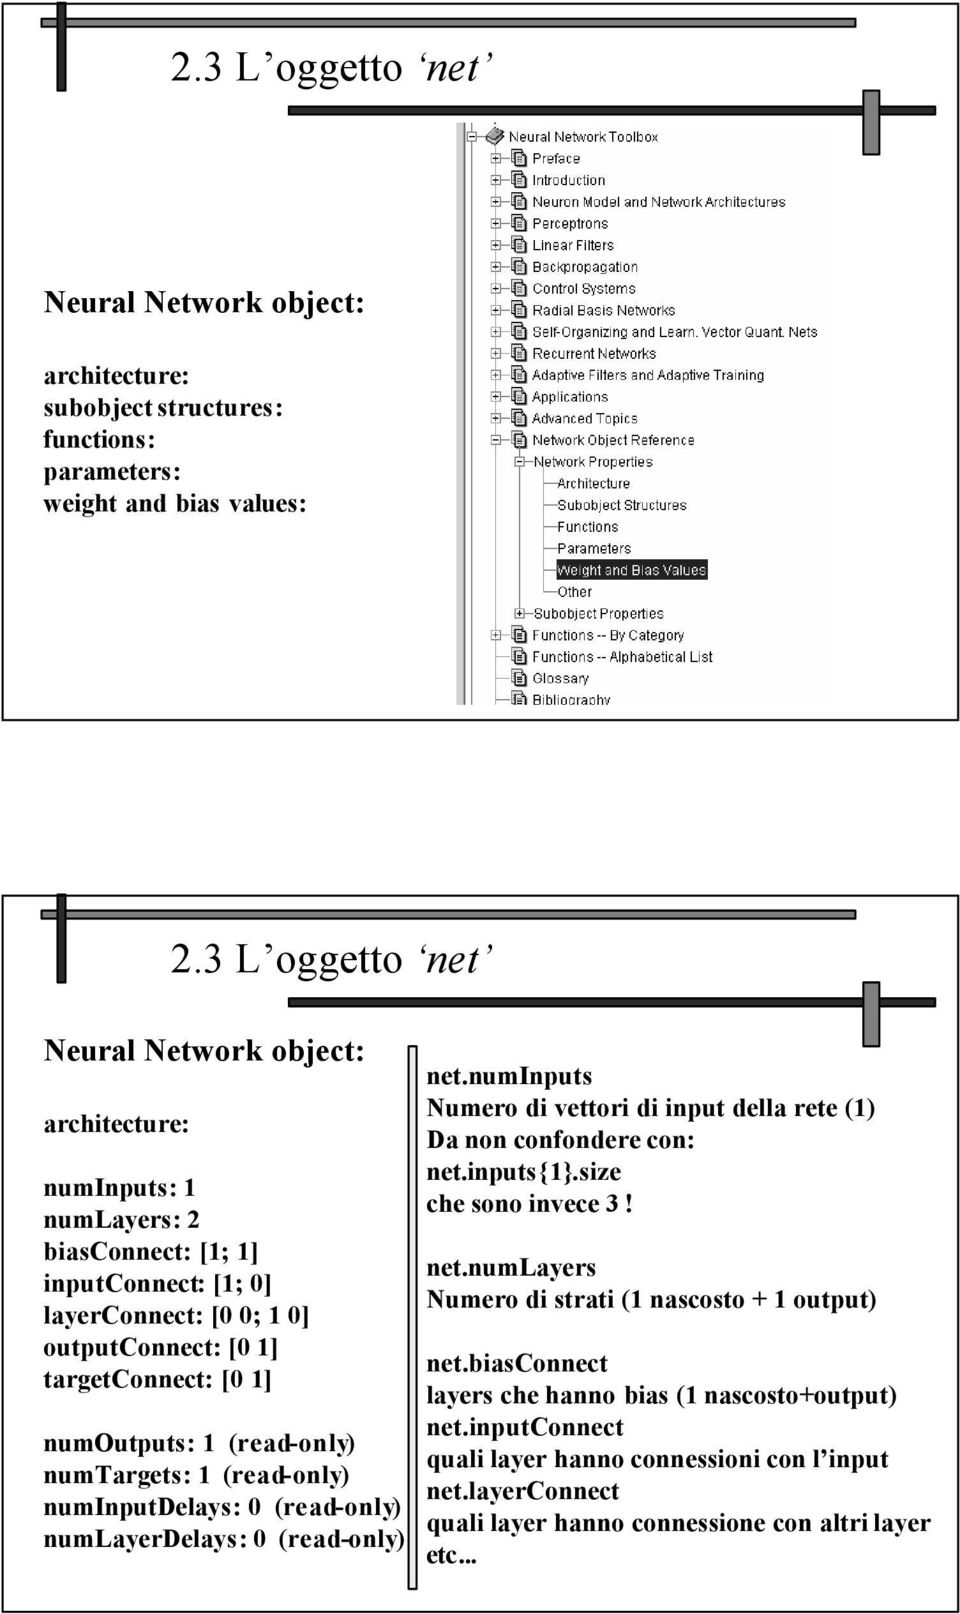 numoutputs: 1 (read-only) numtargets: 1 (read-only) numinputdelays: 0 (read-only) numlayerdelays: 0 (read-only) net.numinputs Numero di vettori di input della rete (1) Da non confondere con: net.